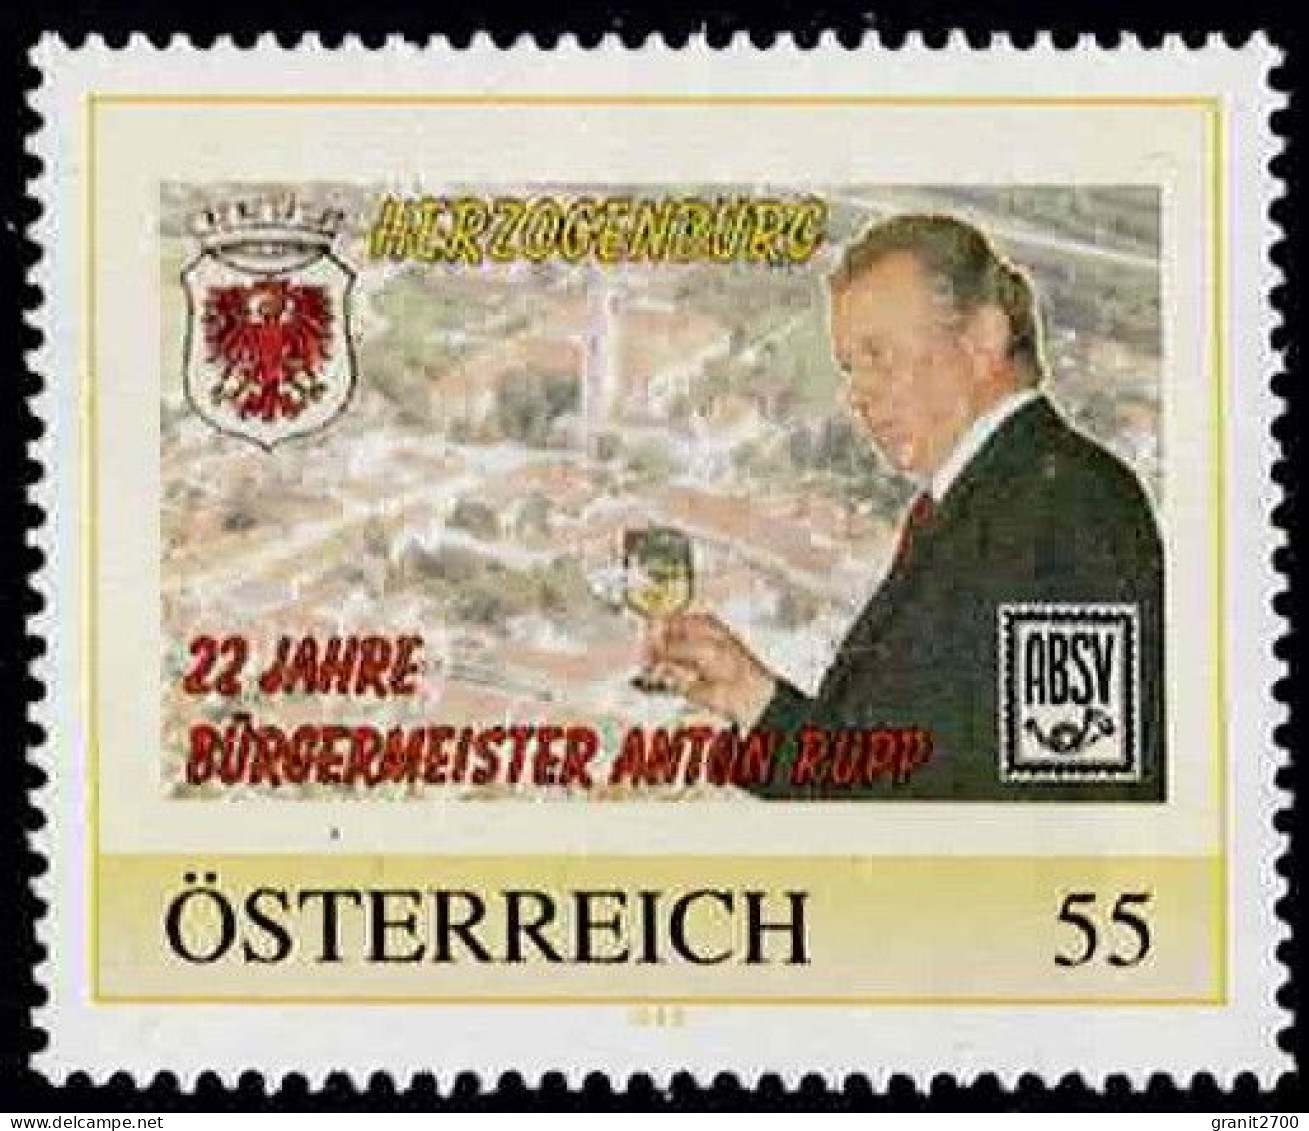 PM  Herzogenburg - 22 Jahre Bürgermeister Ex Bogen Nr. 8015225  Postfrisch - Timbres Personnalisés